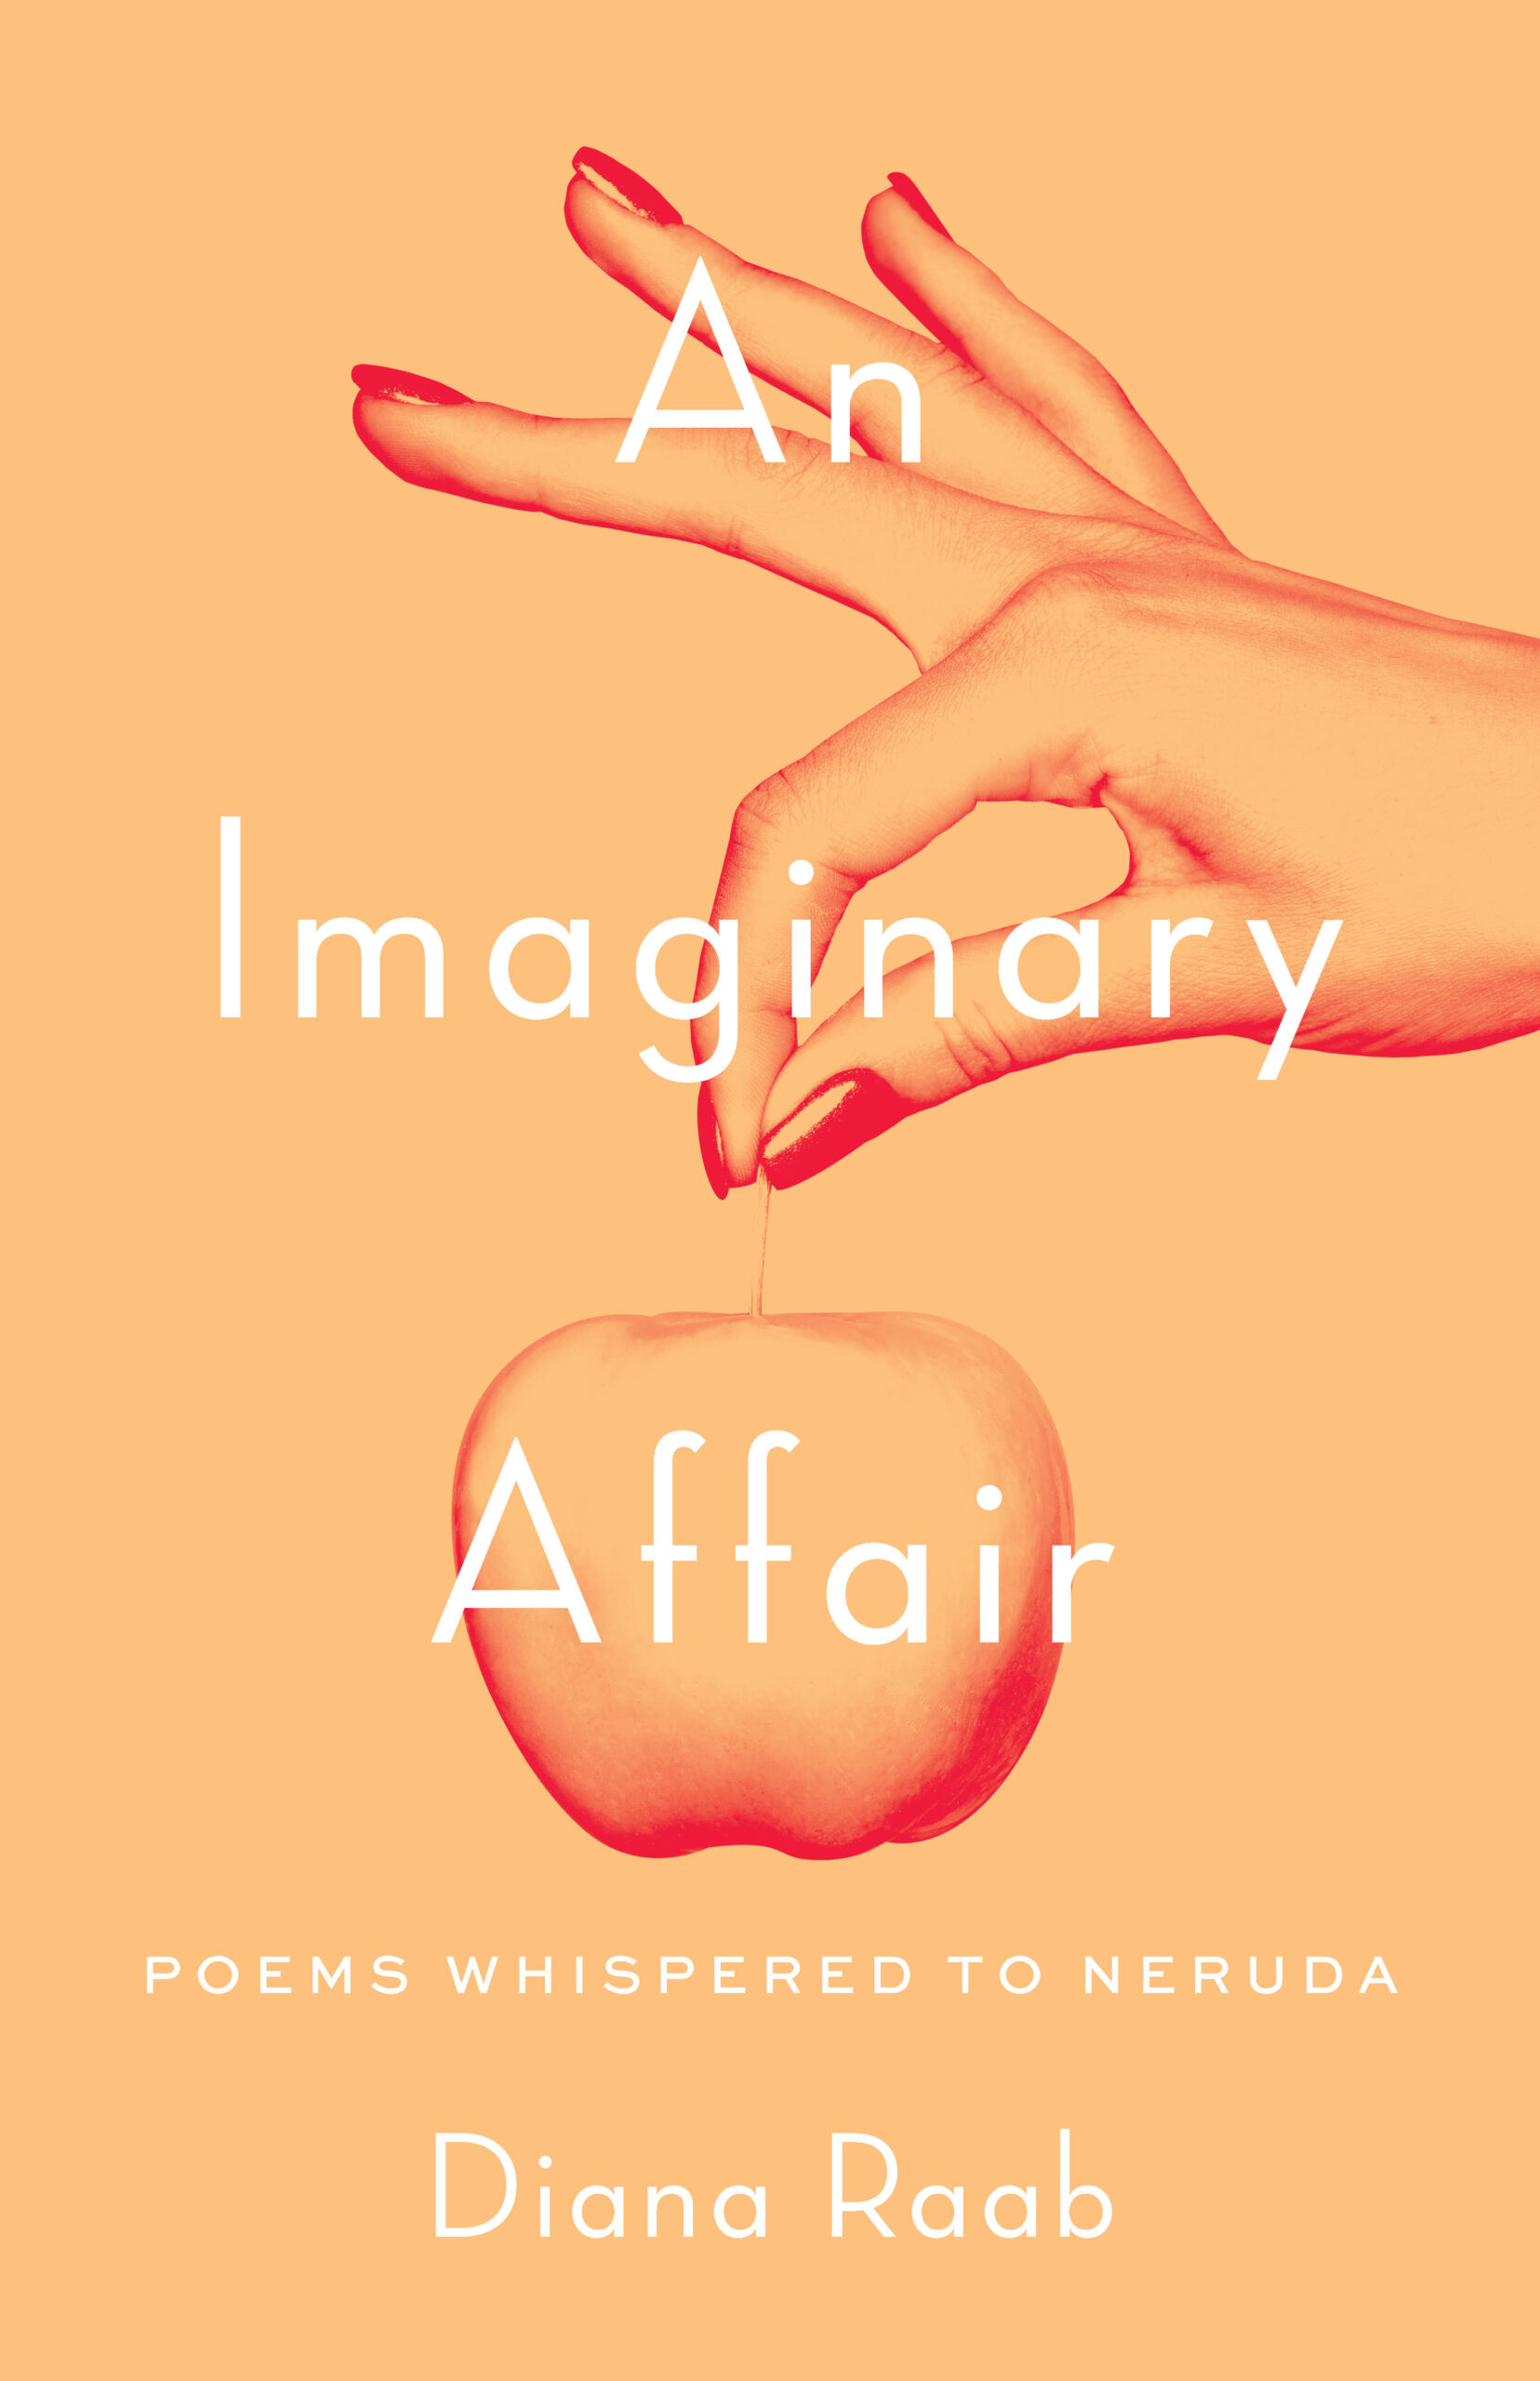 An Imaginary Affair by Diana Raab